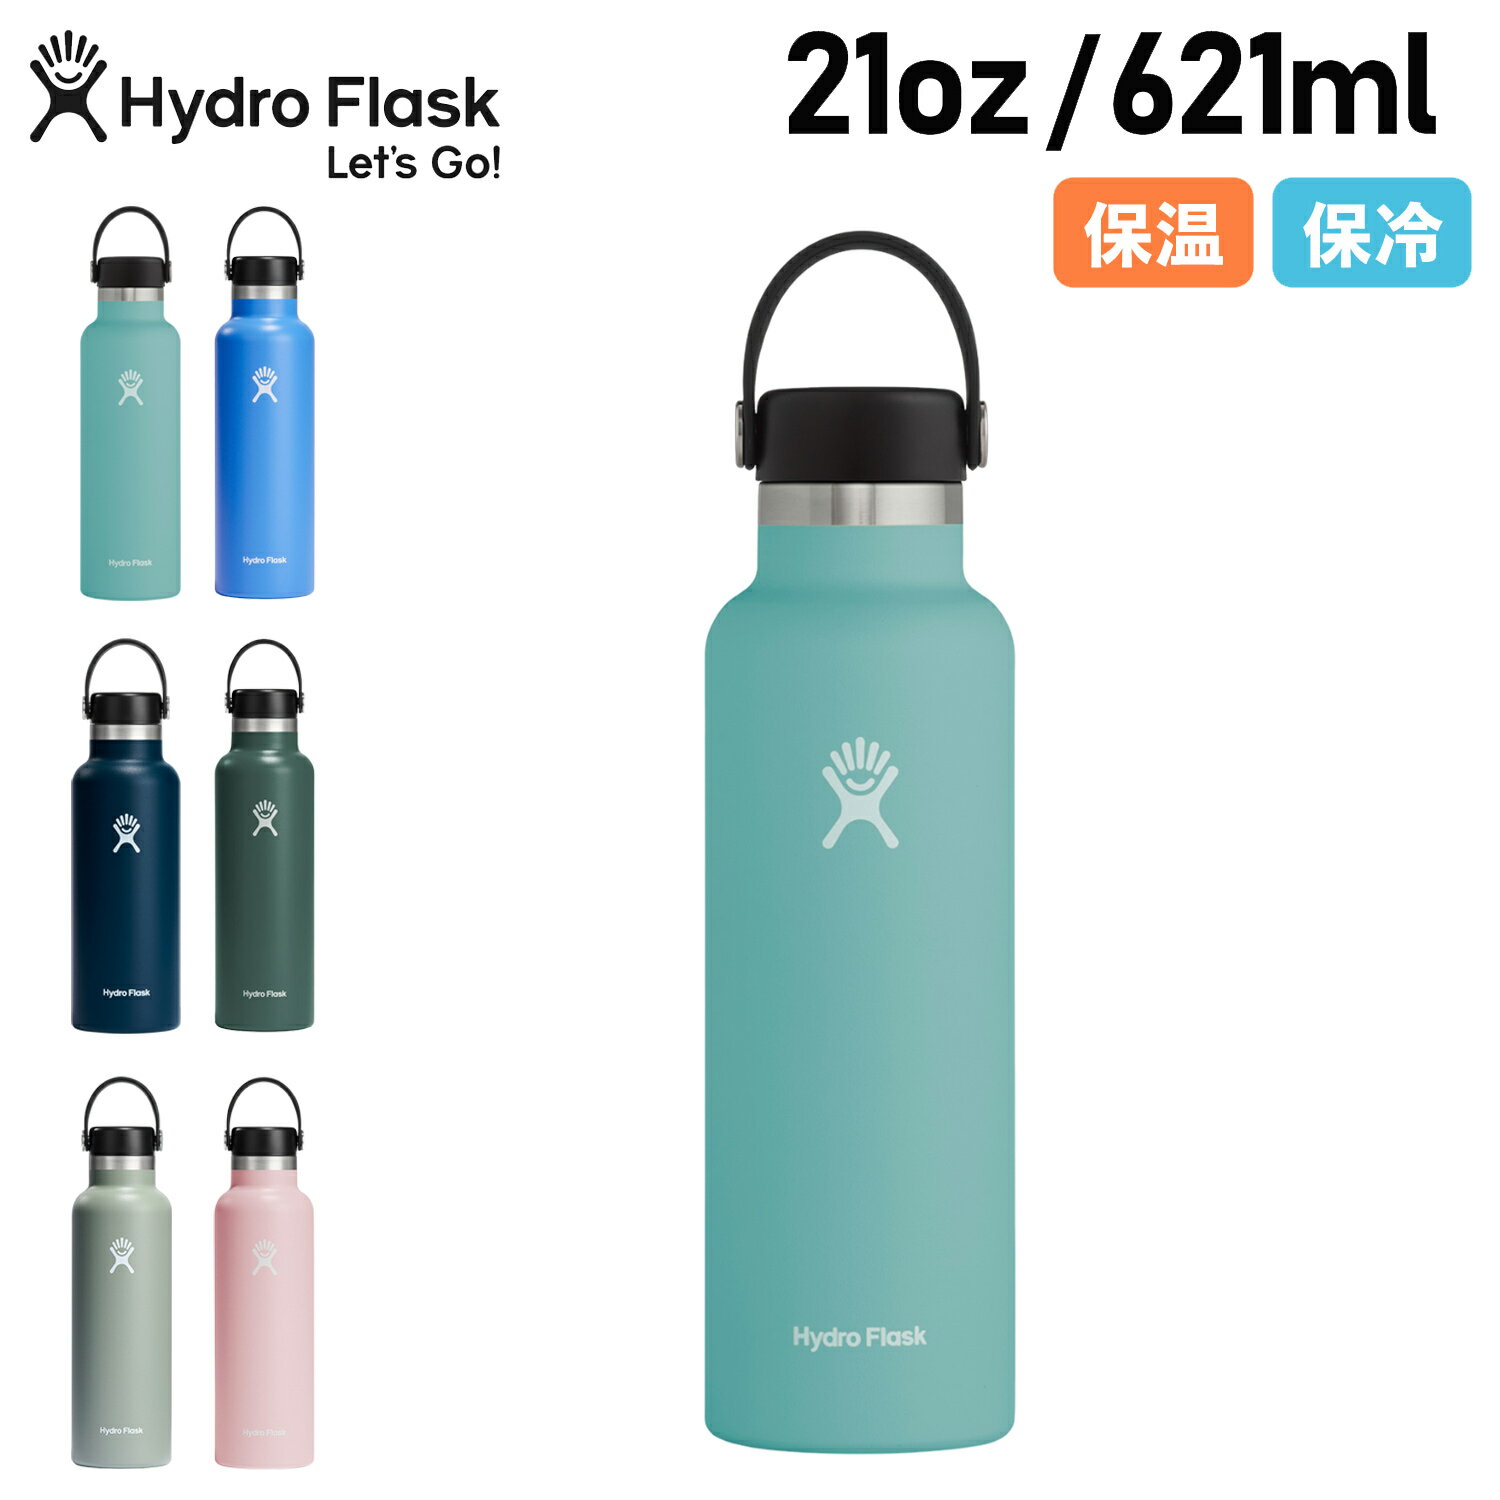 ハイドロフラスク Hydro Flask 21oz 621ml ステンレスボトル マグボトル 水筒  ...